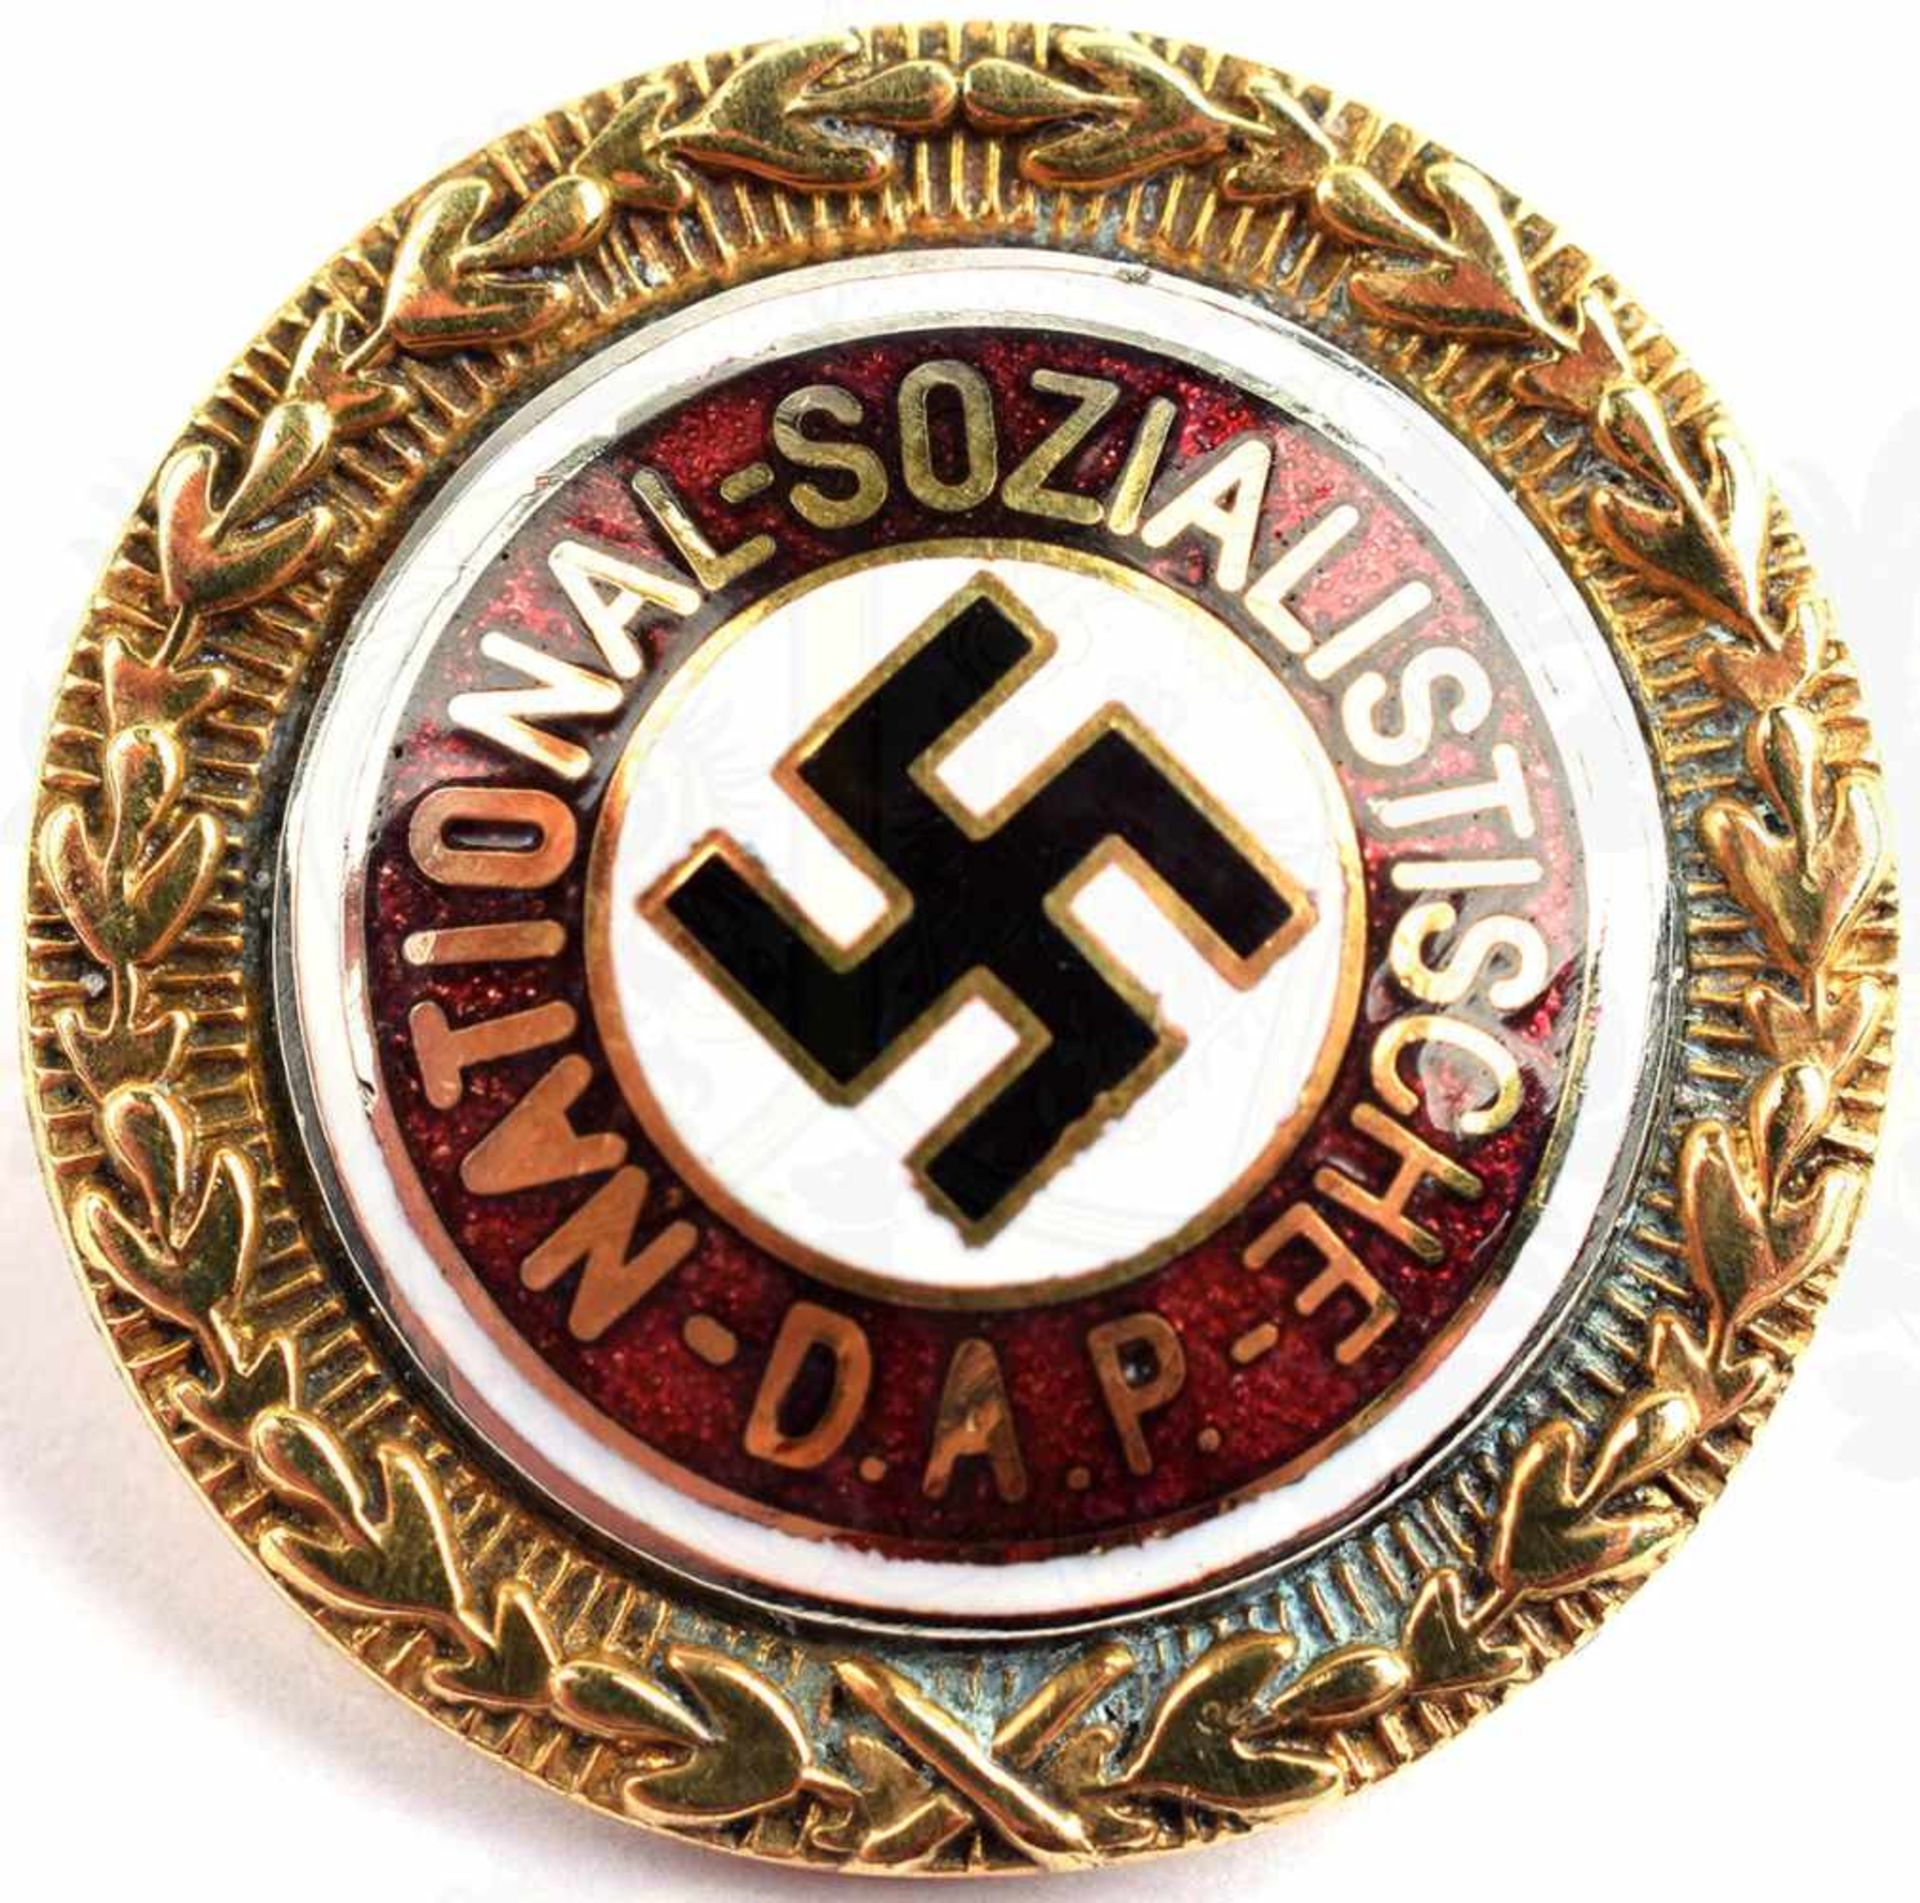 GOLDENES EHRENZEICHEN DER NSDAP, vergld., s/w/r emailliert, Matrikel-Nr. 50955, Herst. „Deschler